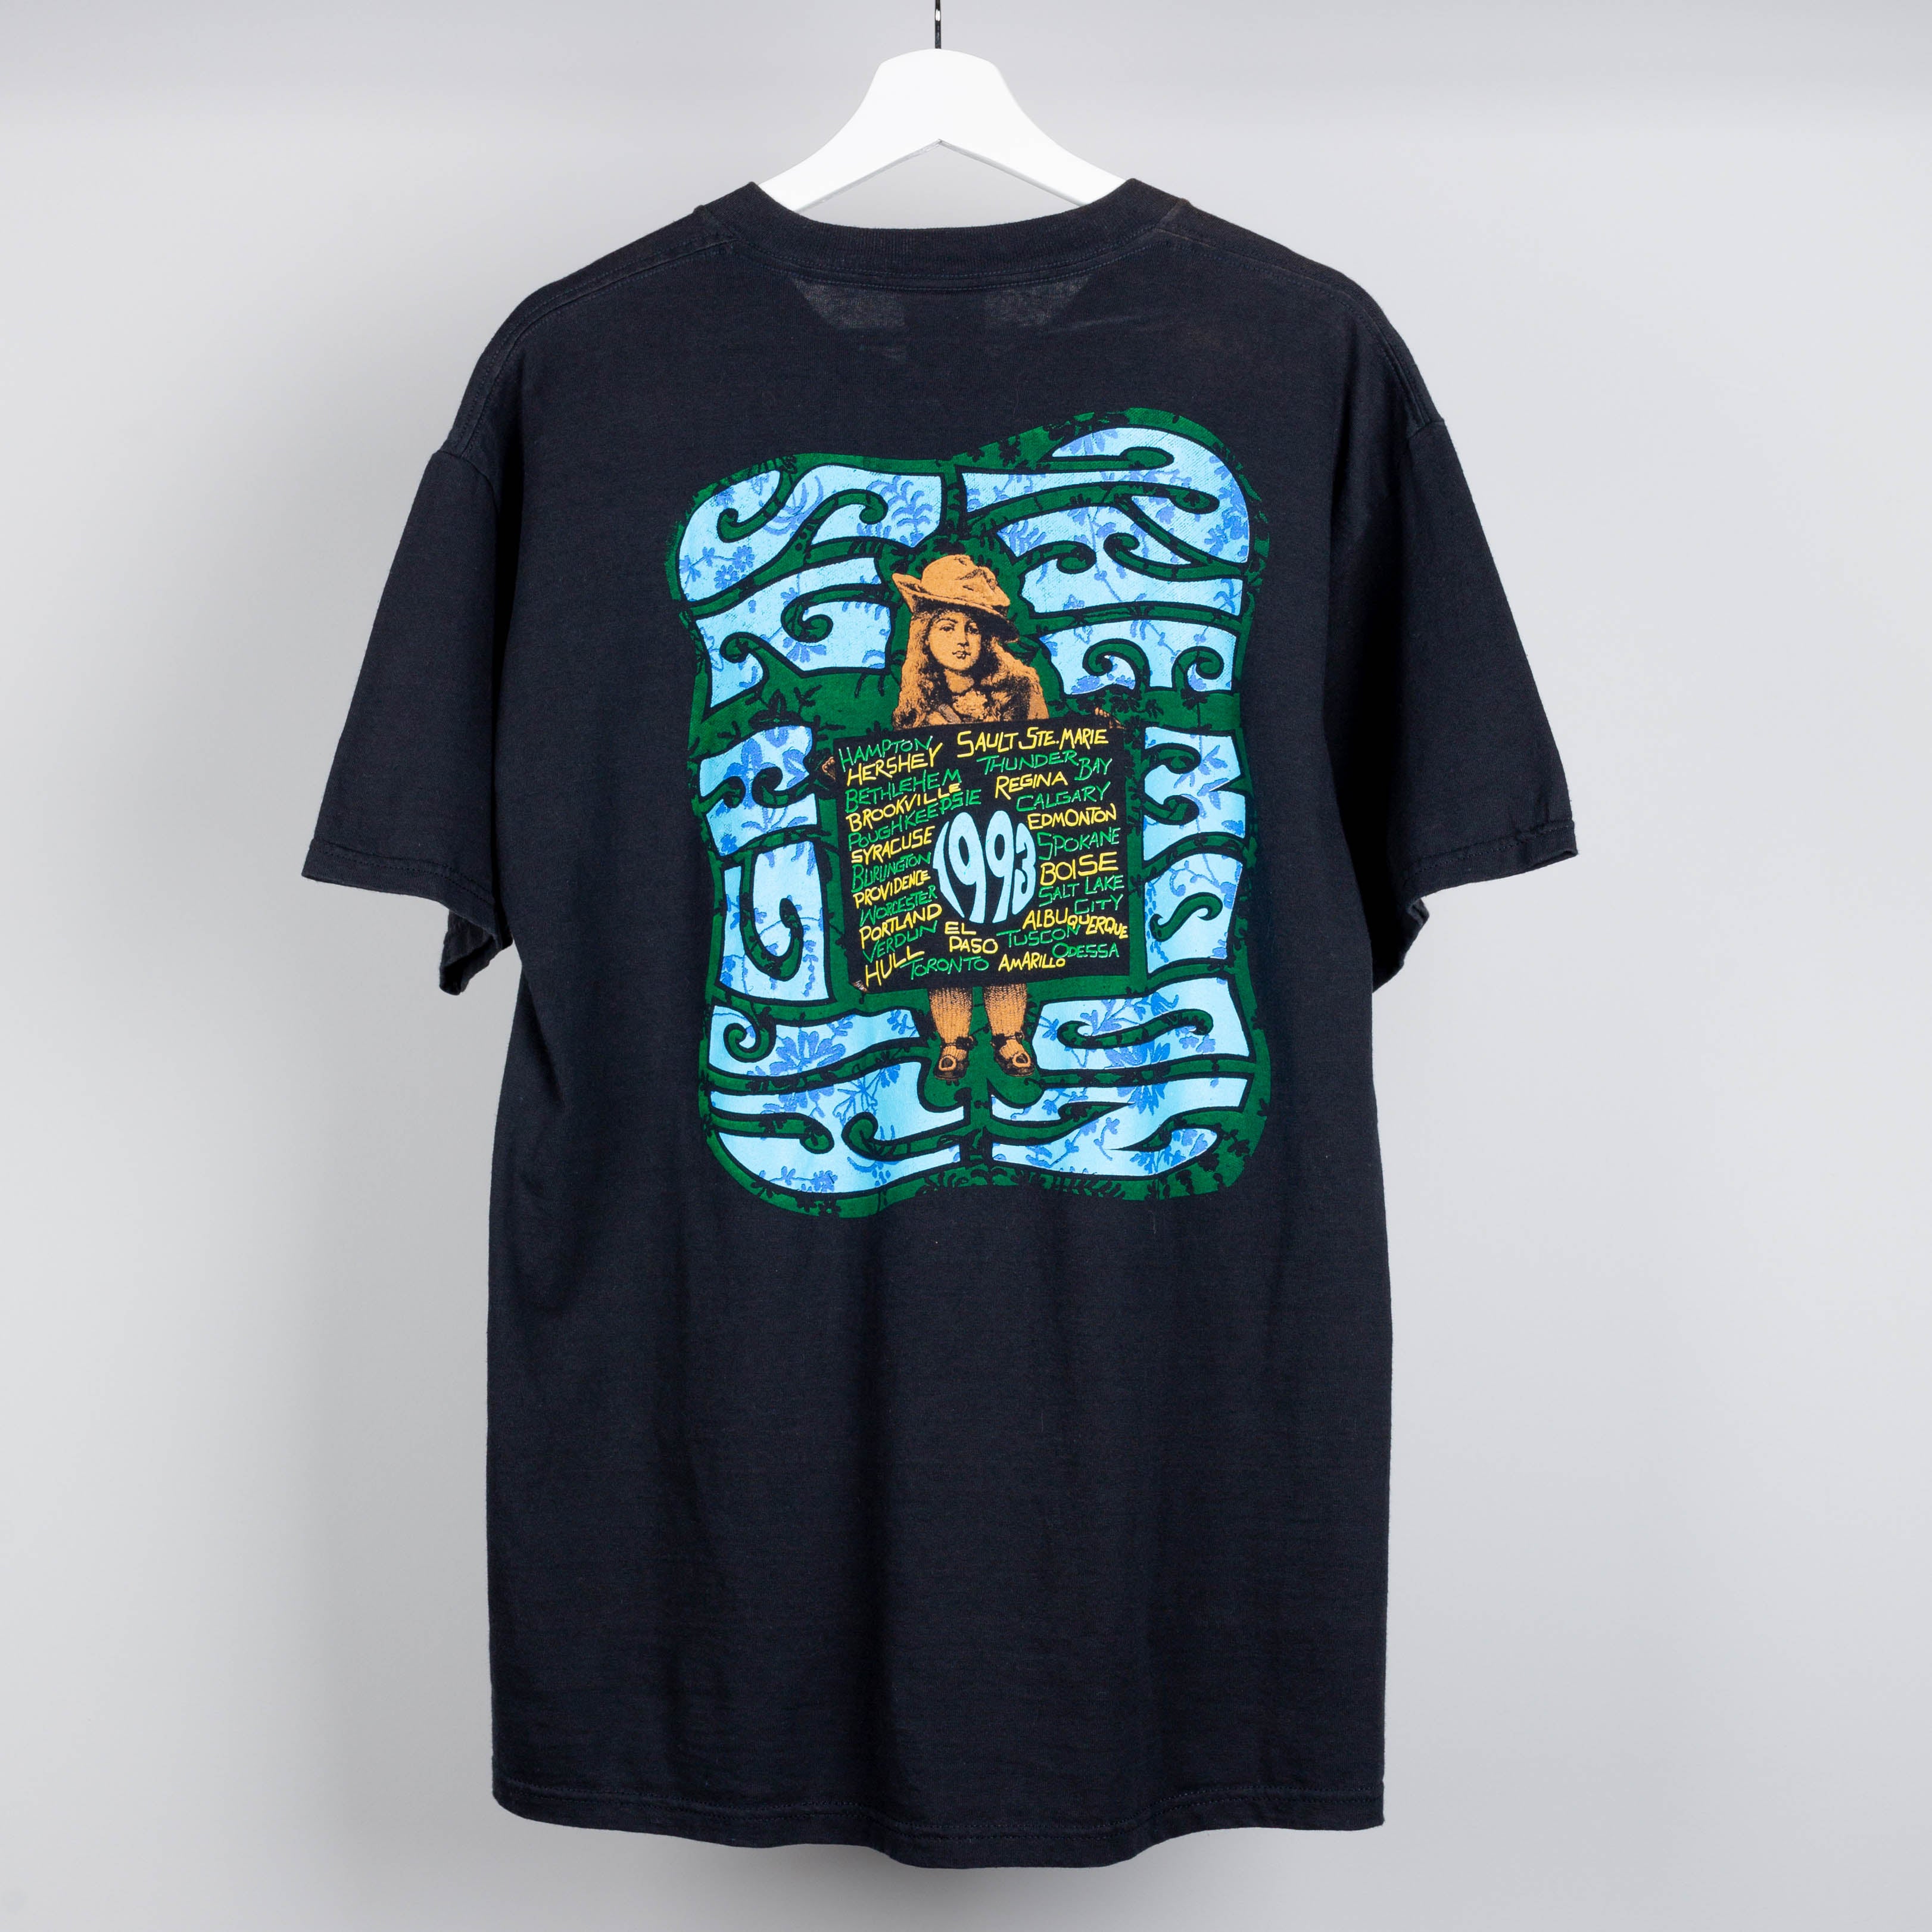 1993 The Black Crowes Tour T-Shirt Size L